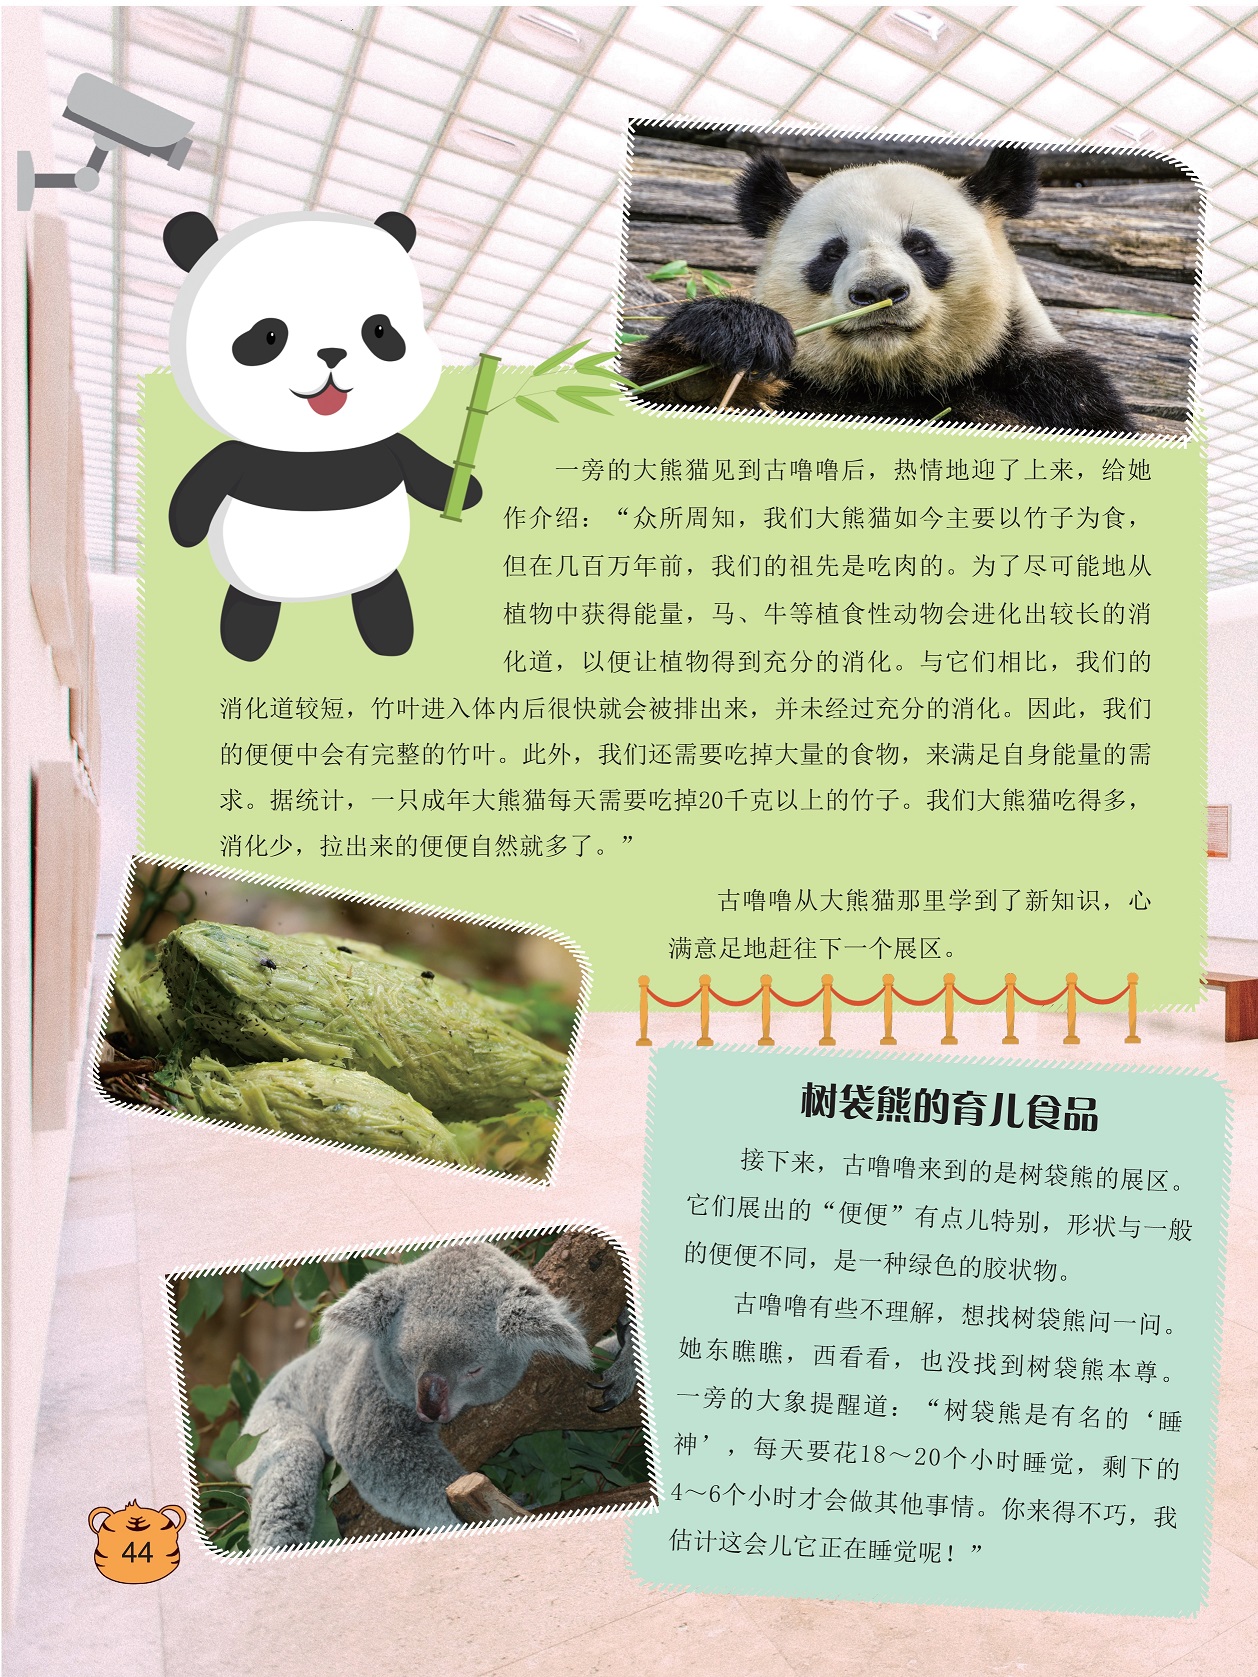 大熊猫如今主要以竹子为食,树袋熊的育儿食品